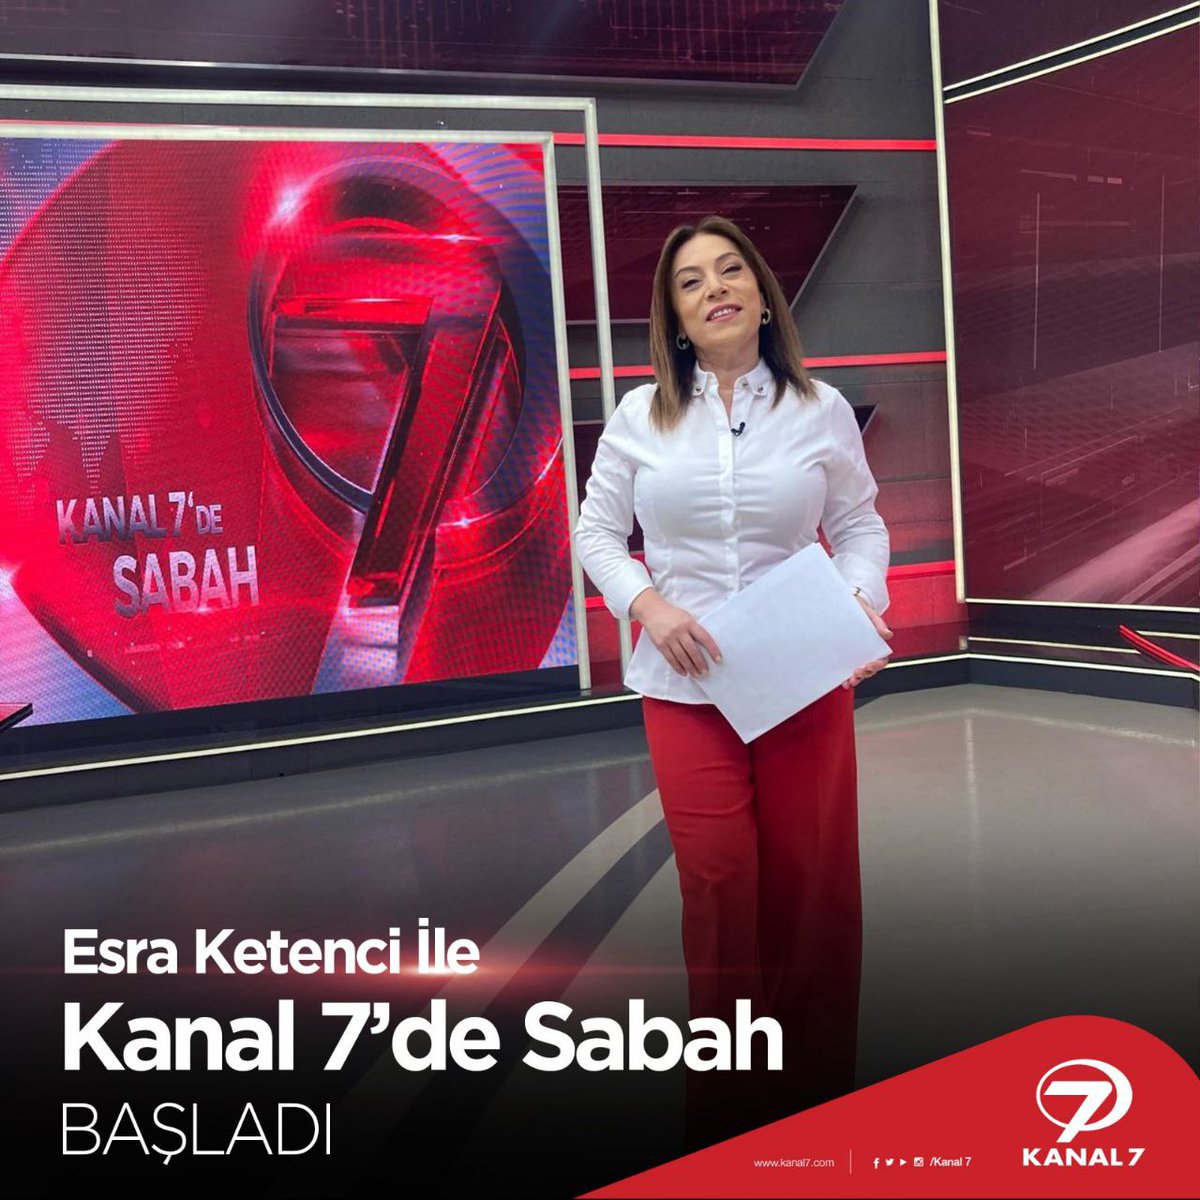 Türkiye güne Esra Ketenci ile başlıyor! 🤩🌅 En doğru ve güncel haberlerin adresi Esra Ketenci ile Kanal 7'de Sabah başladı! 🤩🤩 #haber #esraketenci #kanal7desabah #gündem #kanal7 #günaydın